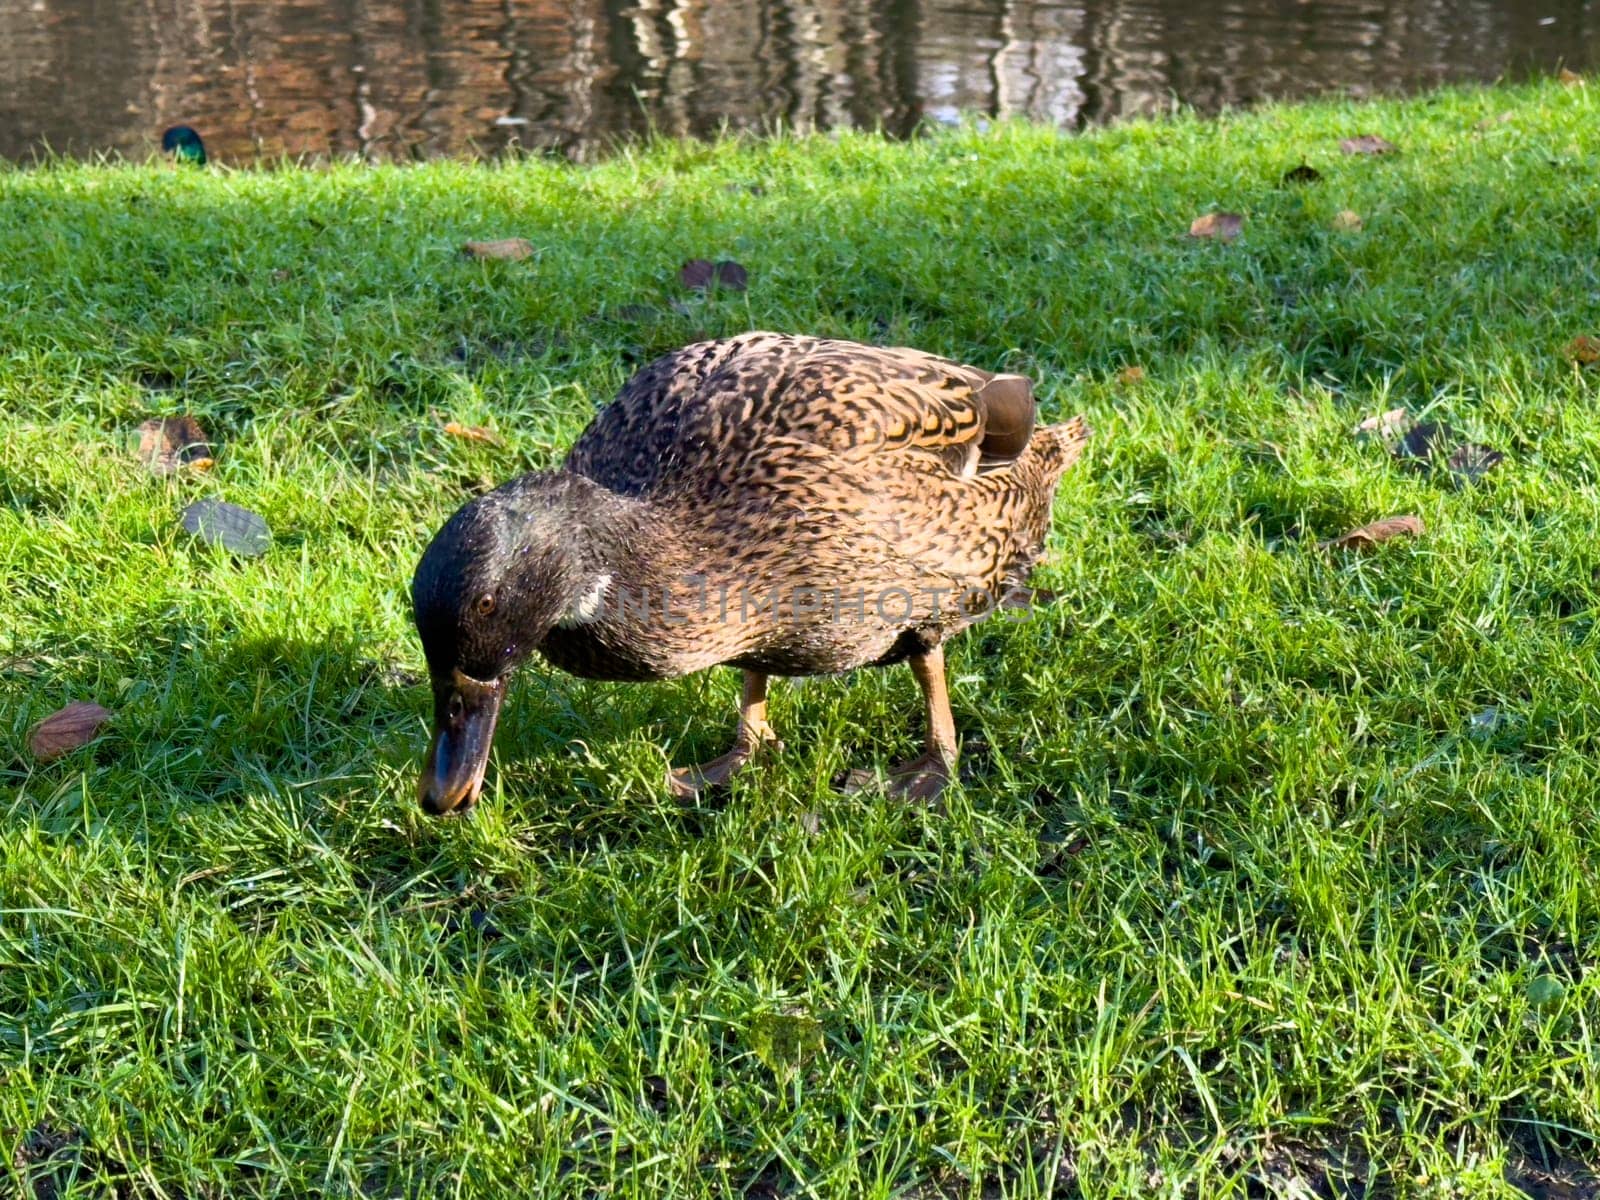 Europen mallard duck standing on the grass by Bonandbon